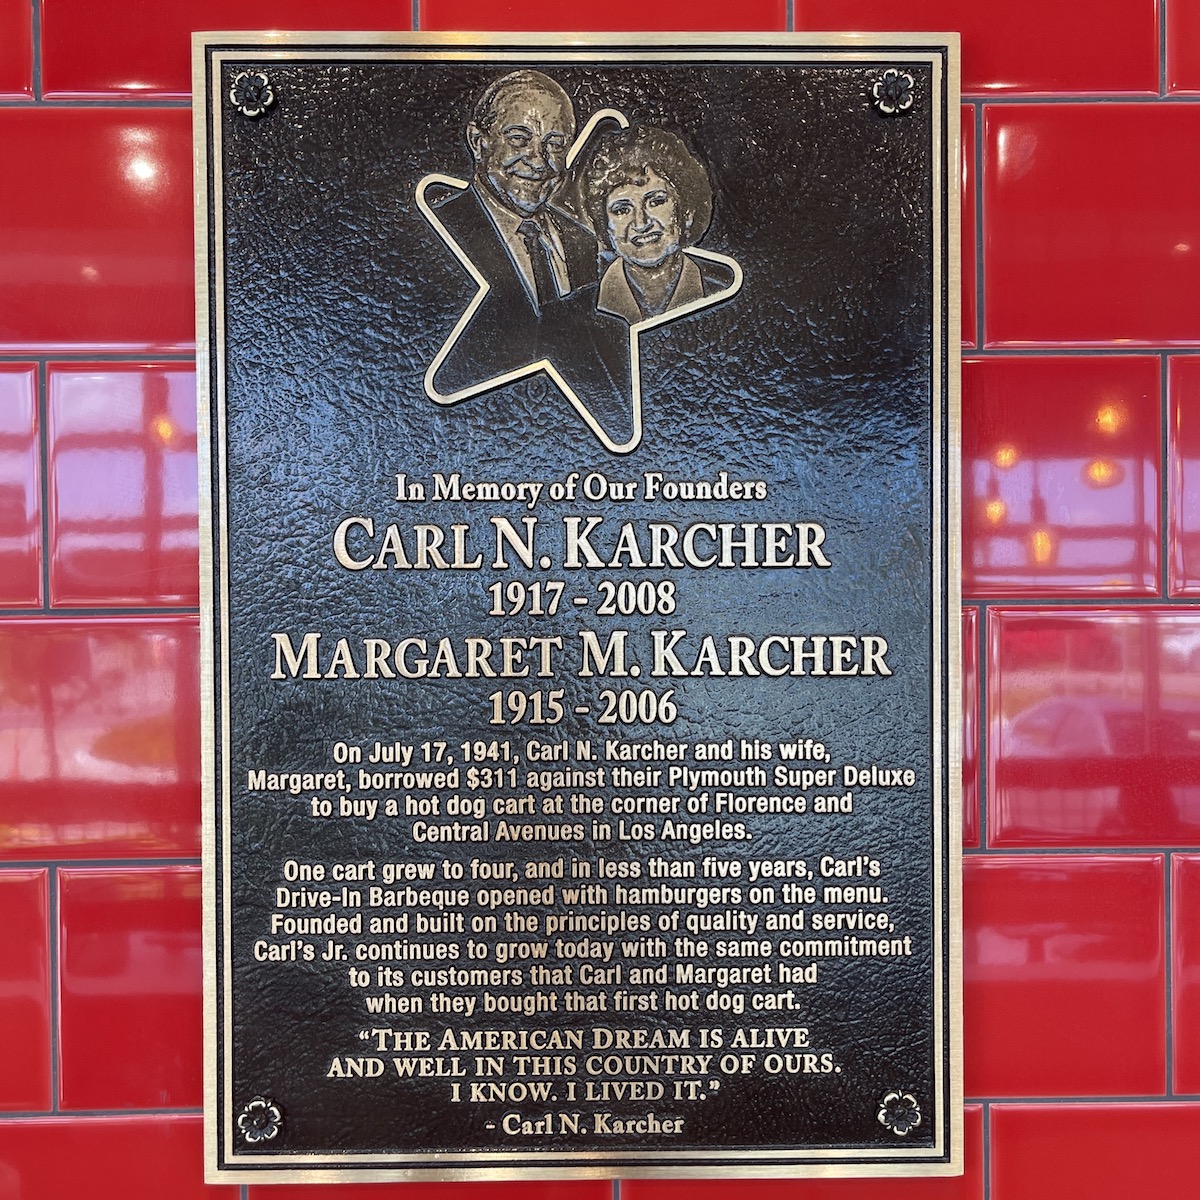 Carl and Margaret Karcher Memorial Plaque at Carl's Jr. in Doral, Florida